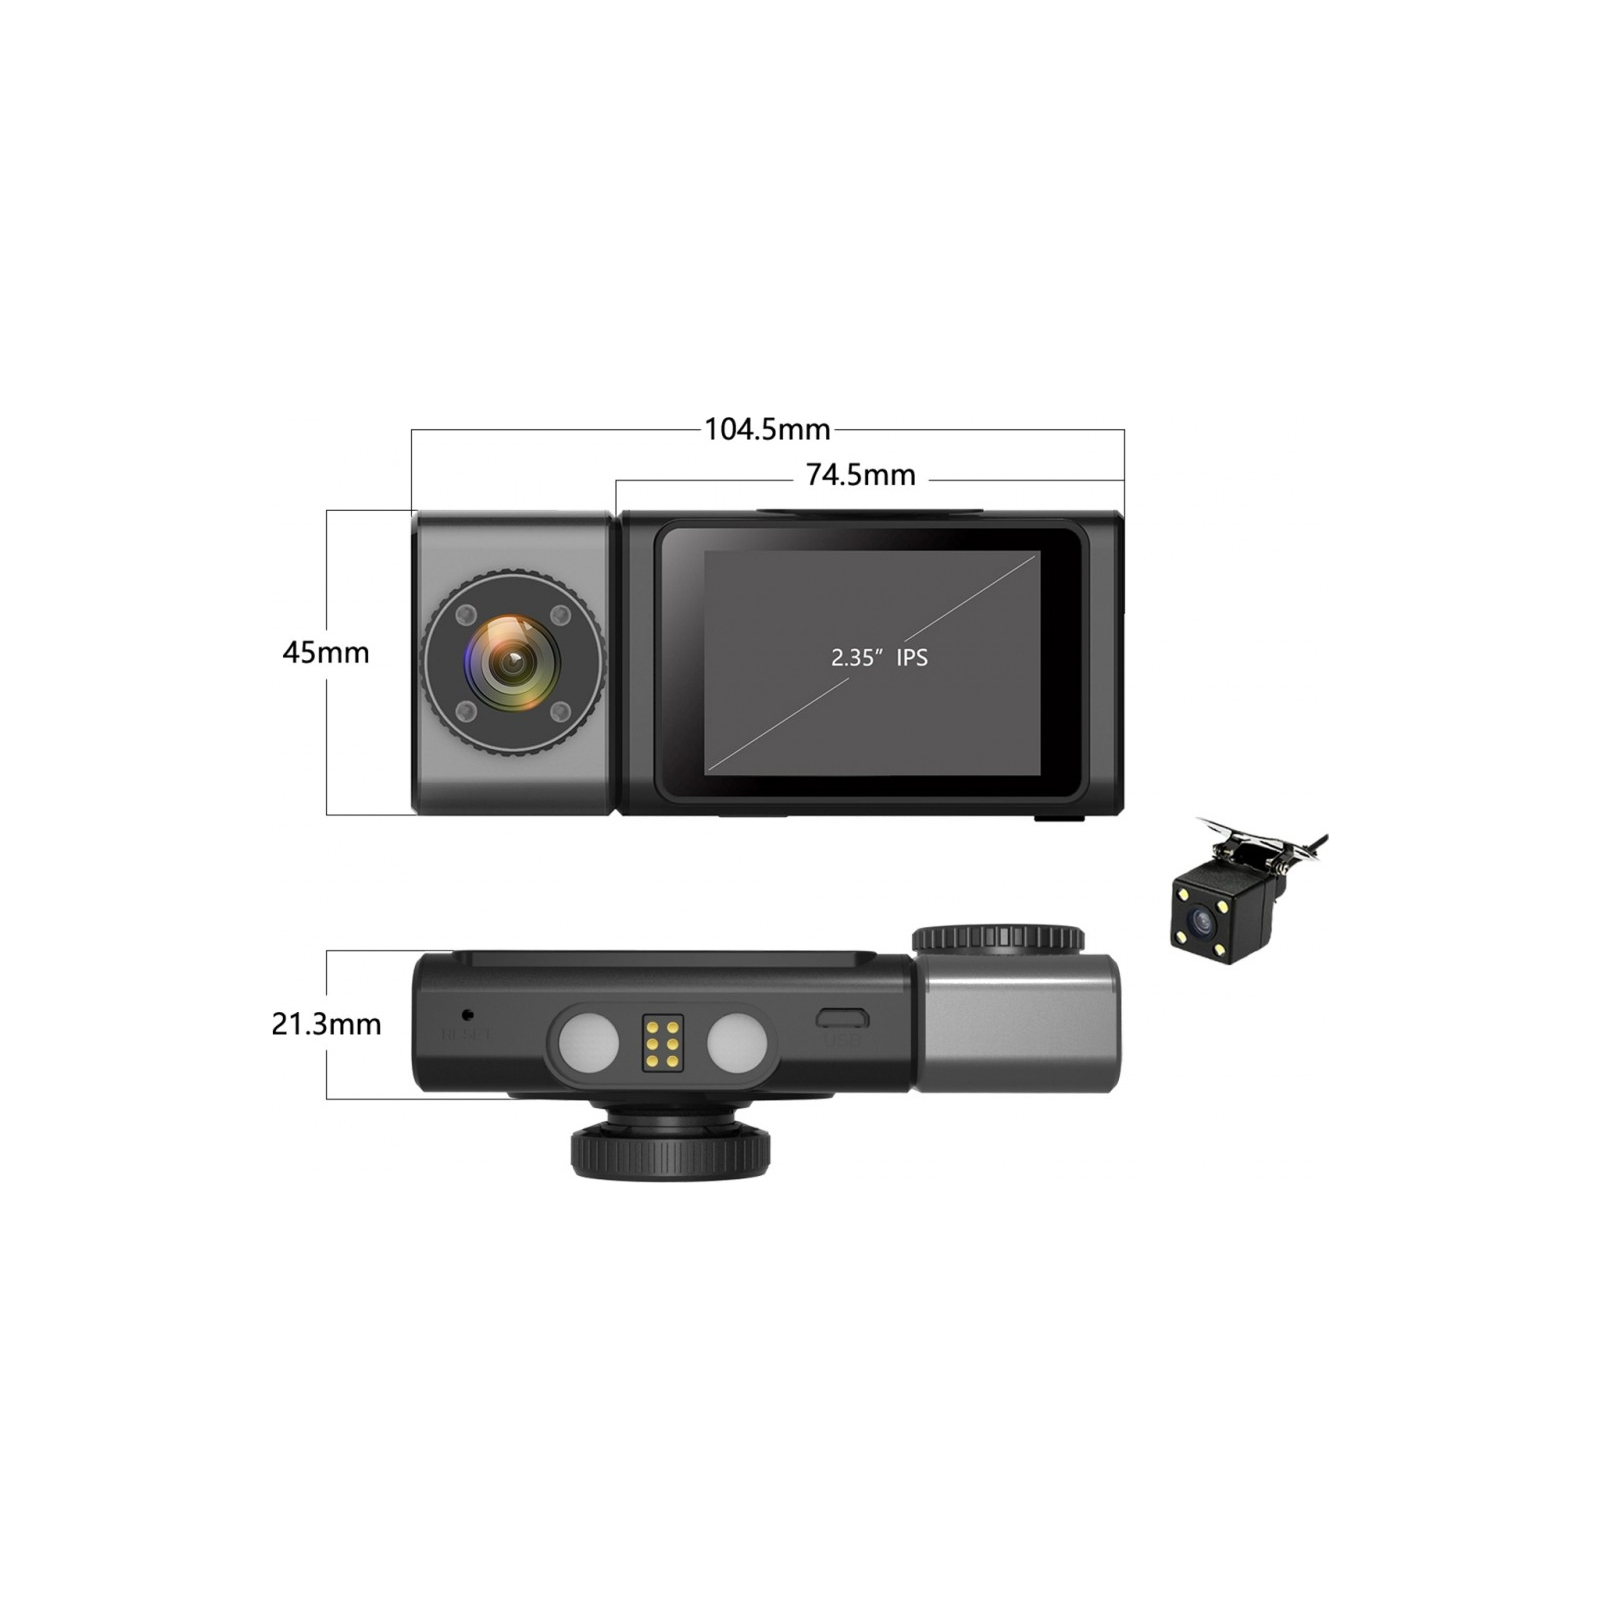 Відеореєстратор Aspiring Alibi 9 GPS, 3 Cameras, Speedcam (Aspiring Alibi 9 GPS, 3 Cameras, Speedcam) зображення 3